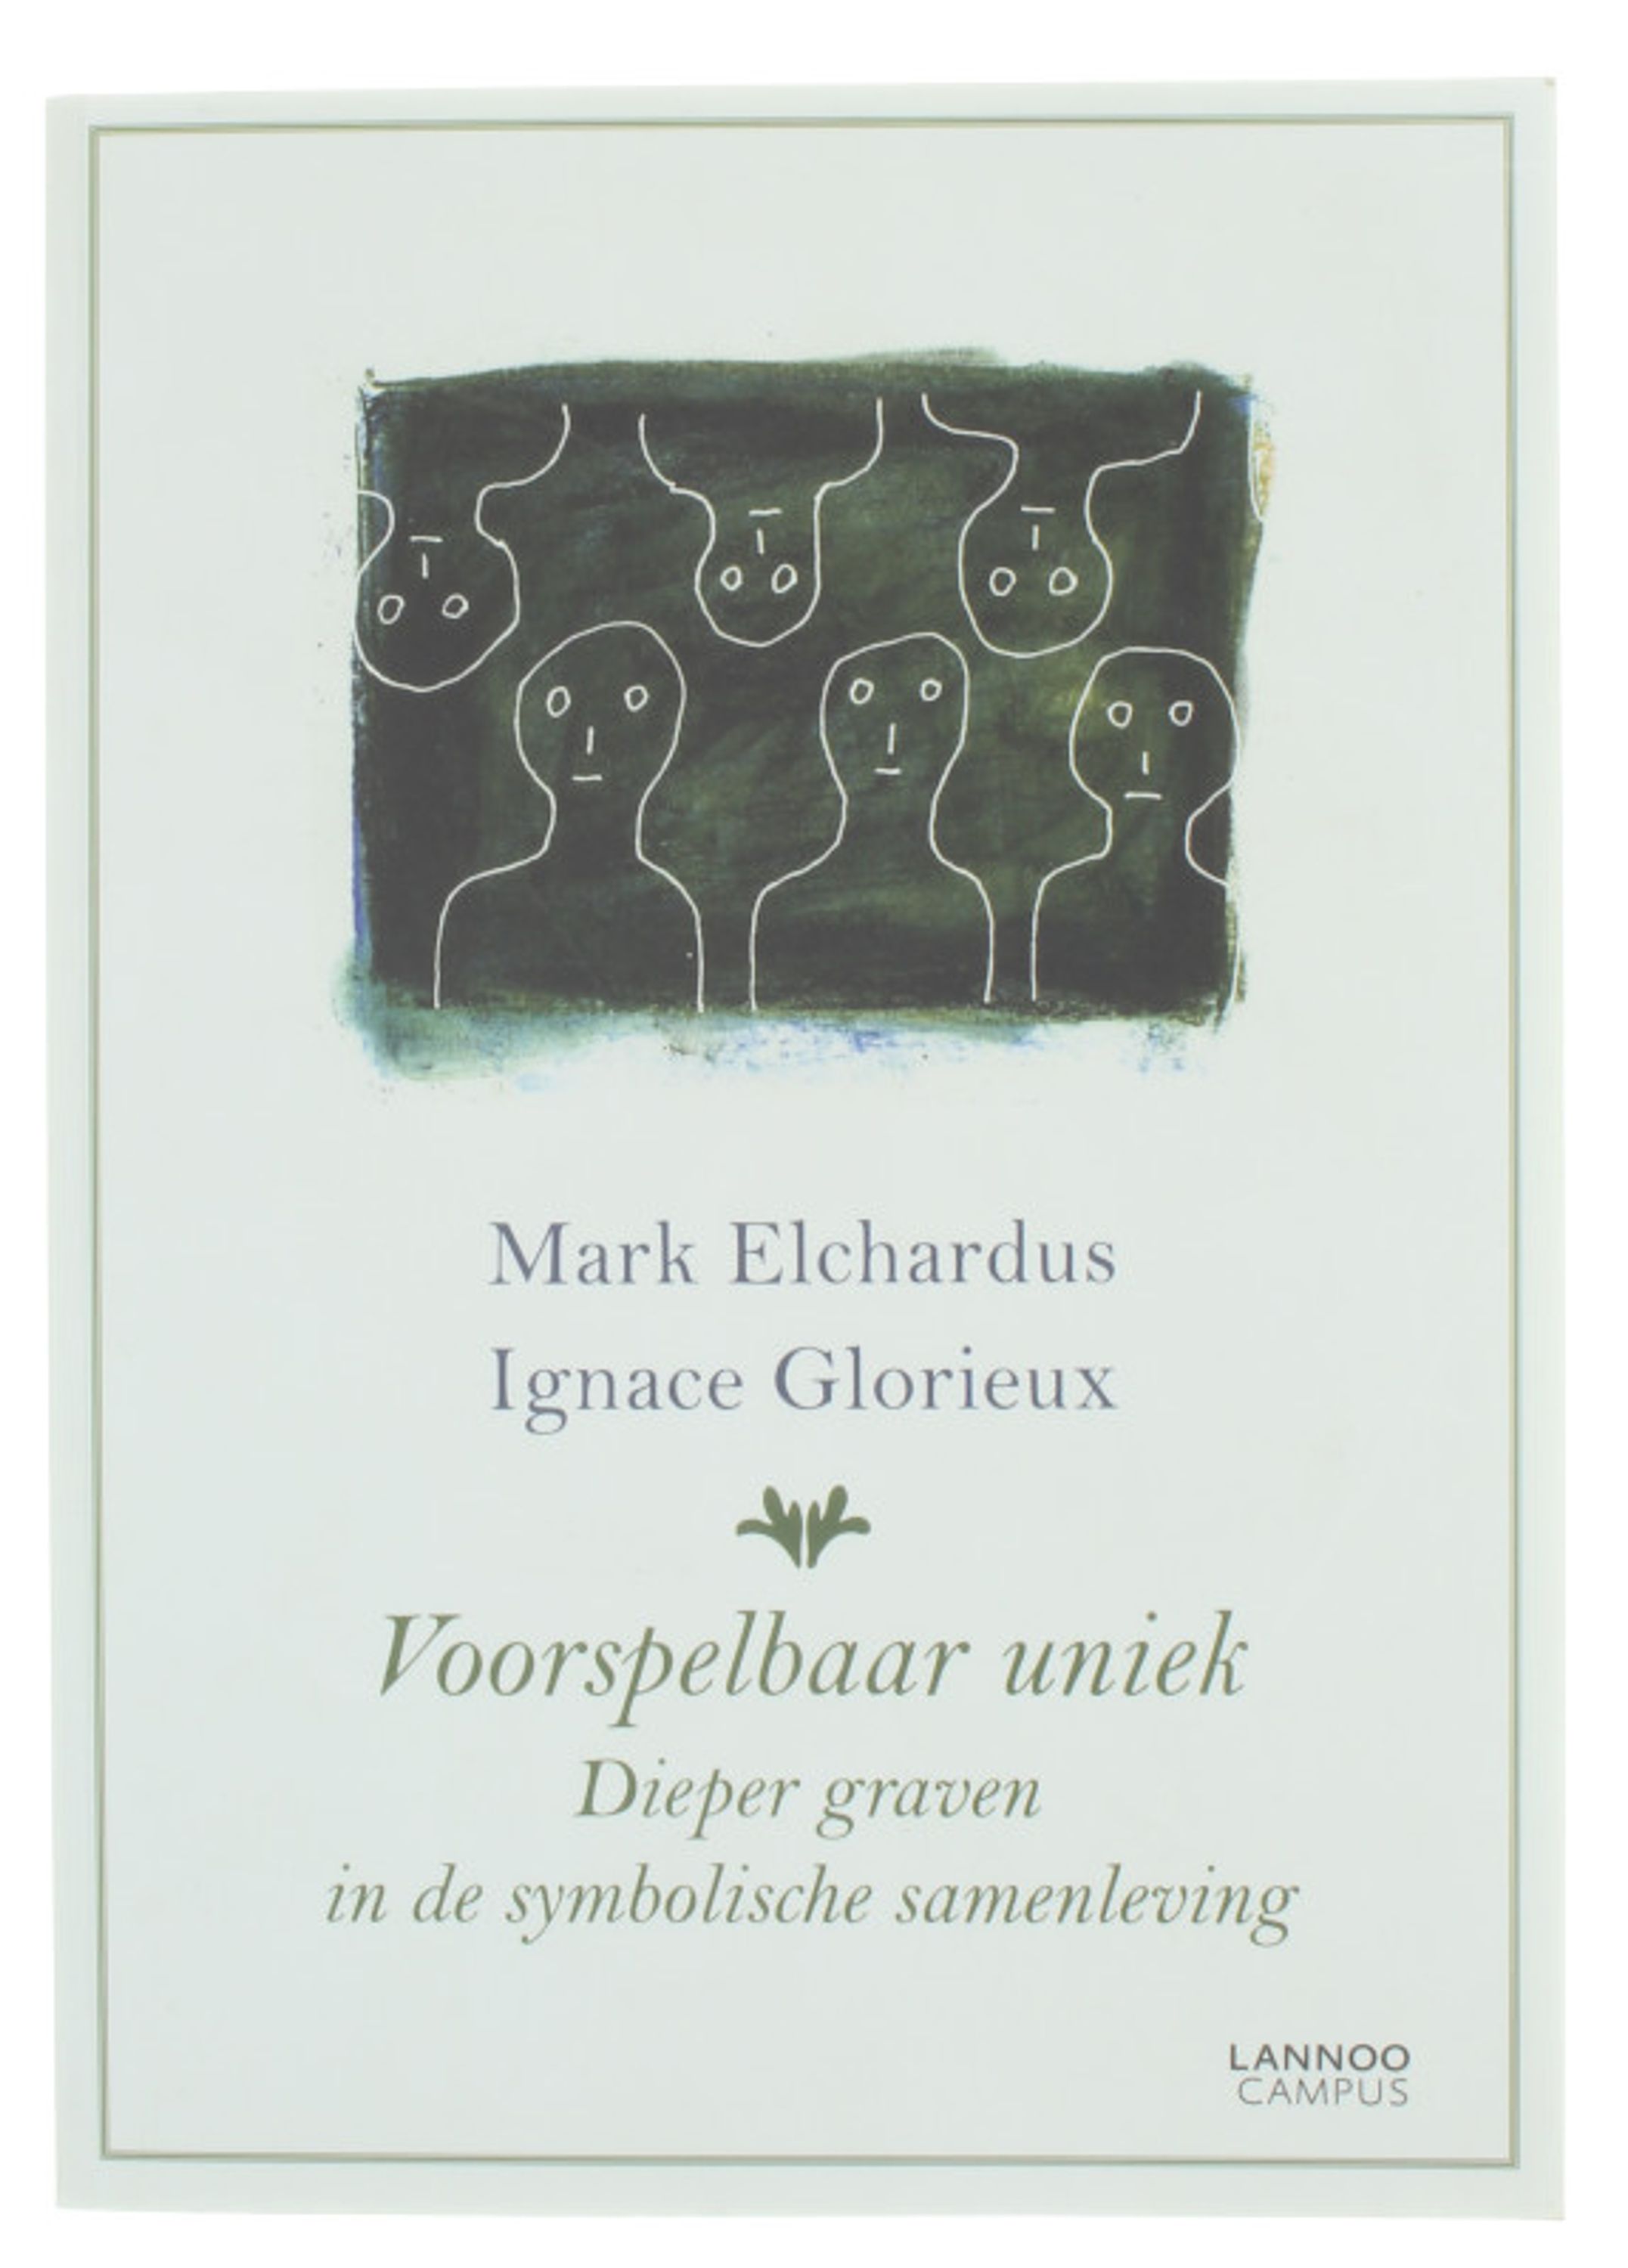 Voorspelbaar uniek - Dieper graven in de symbolische samenleving - Mark Elchardus Glorieux, Ignace